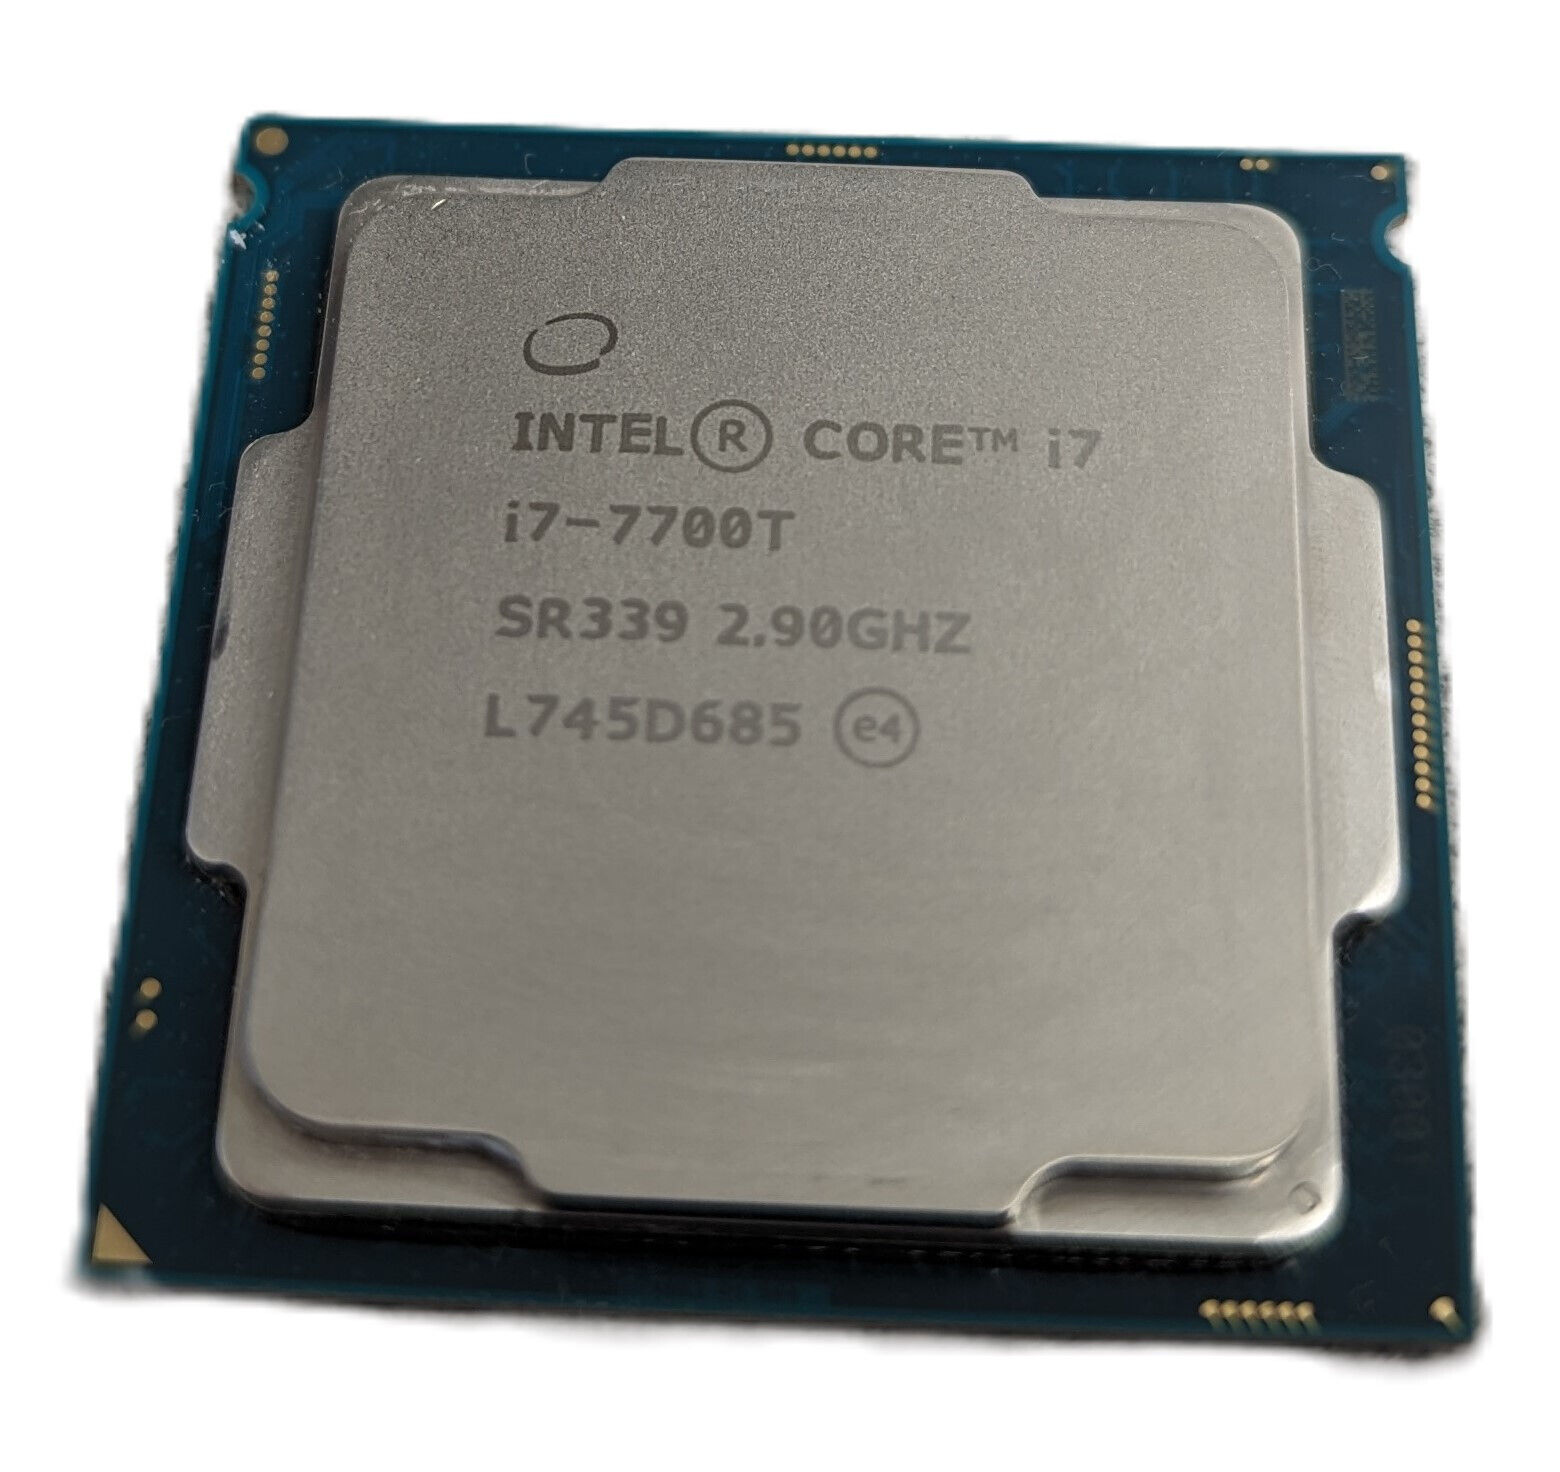 Intel Core i7-7700T 2.90GHz Quad-Core 8MB LGA 1151 Desktop CPU Processor (SR339)